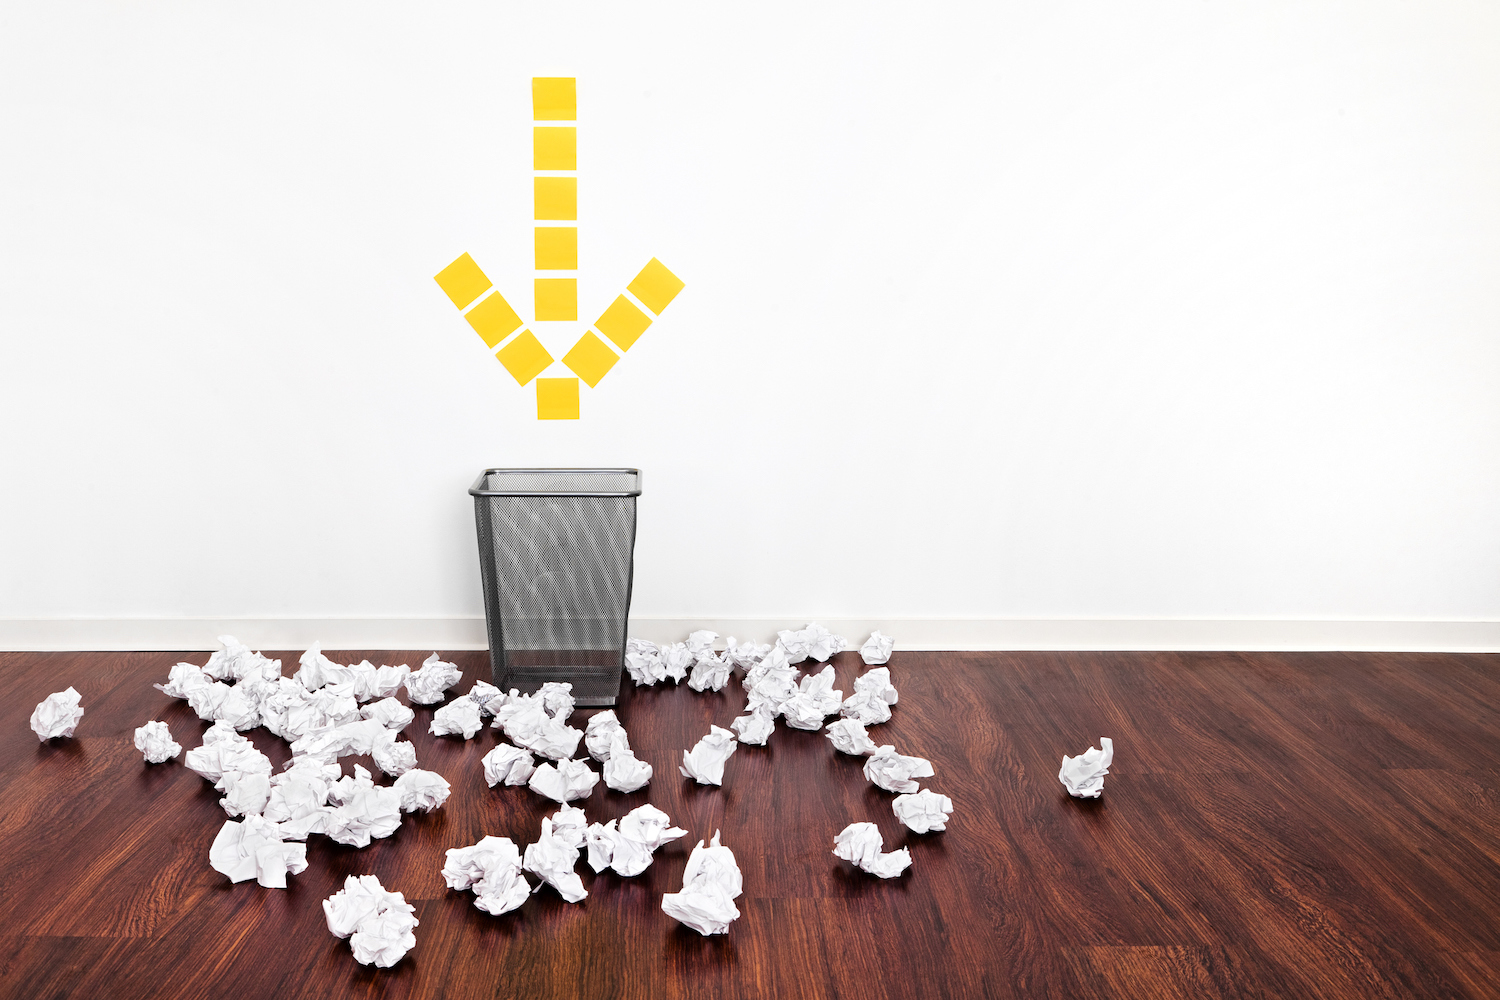 "شکست" دفتر استعاره یک سطل زباله با یک فلش زرد که به آن اشاره می کند که توسط توپ های کاغذی مچاله شده احاطه شده است.